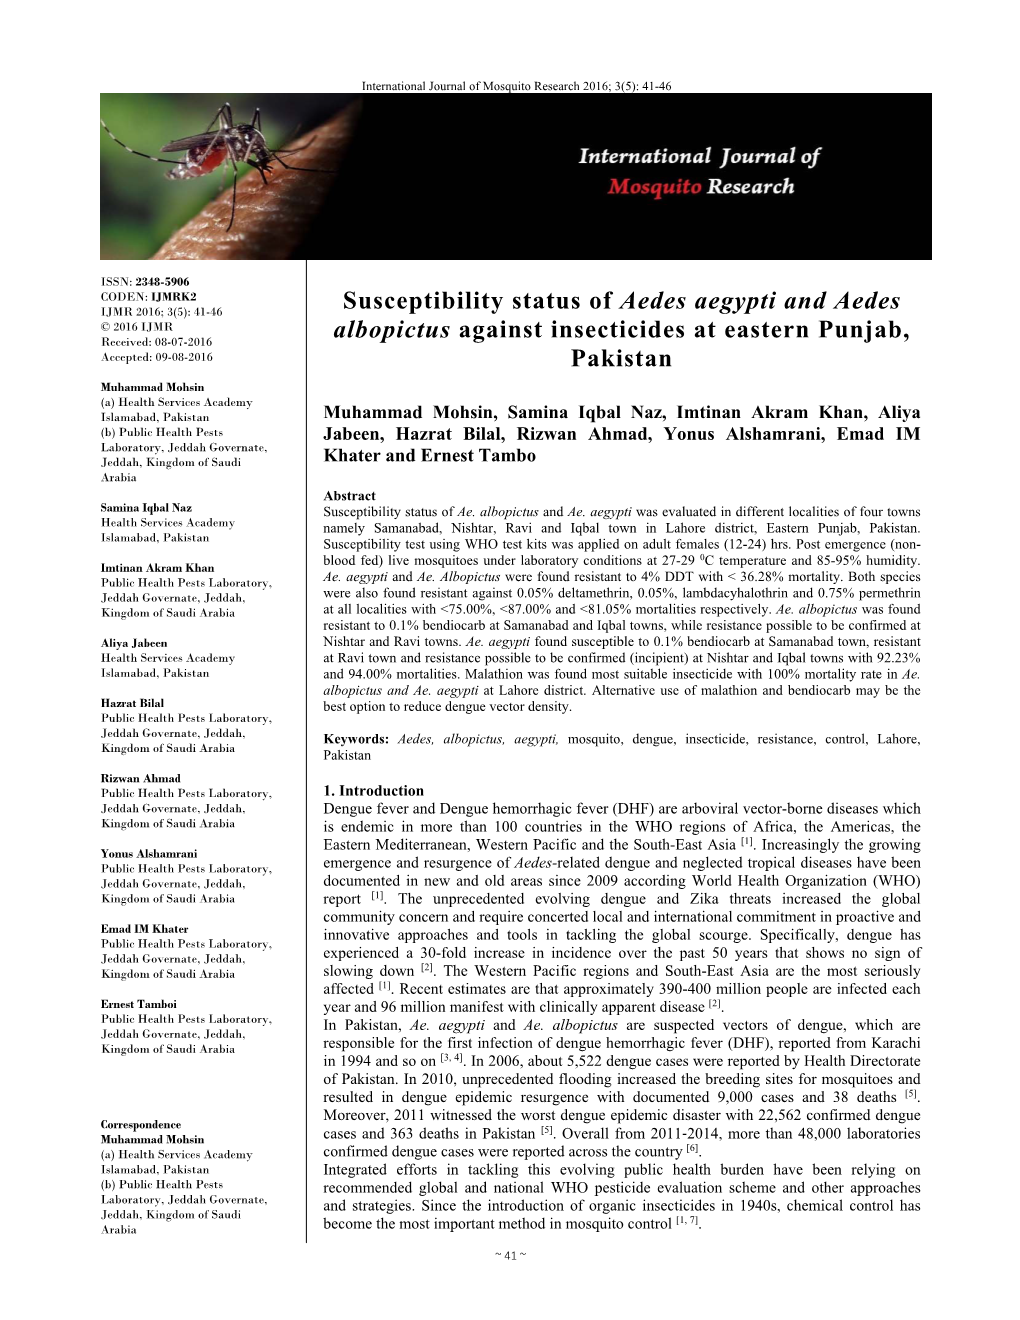 Susceptibility Status of Aedes Aegypti and Aedes Albopictus Against